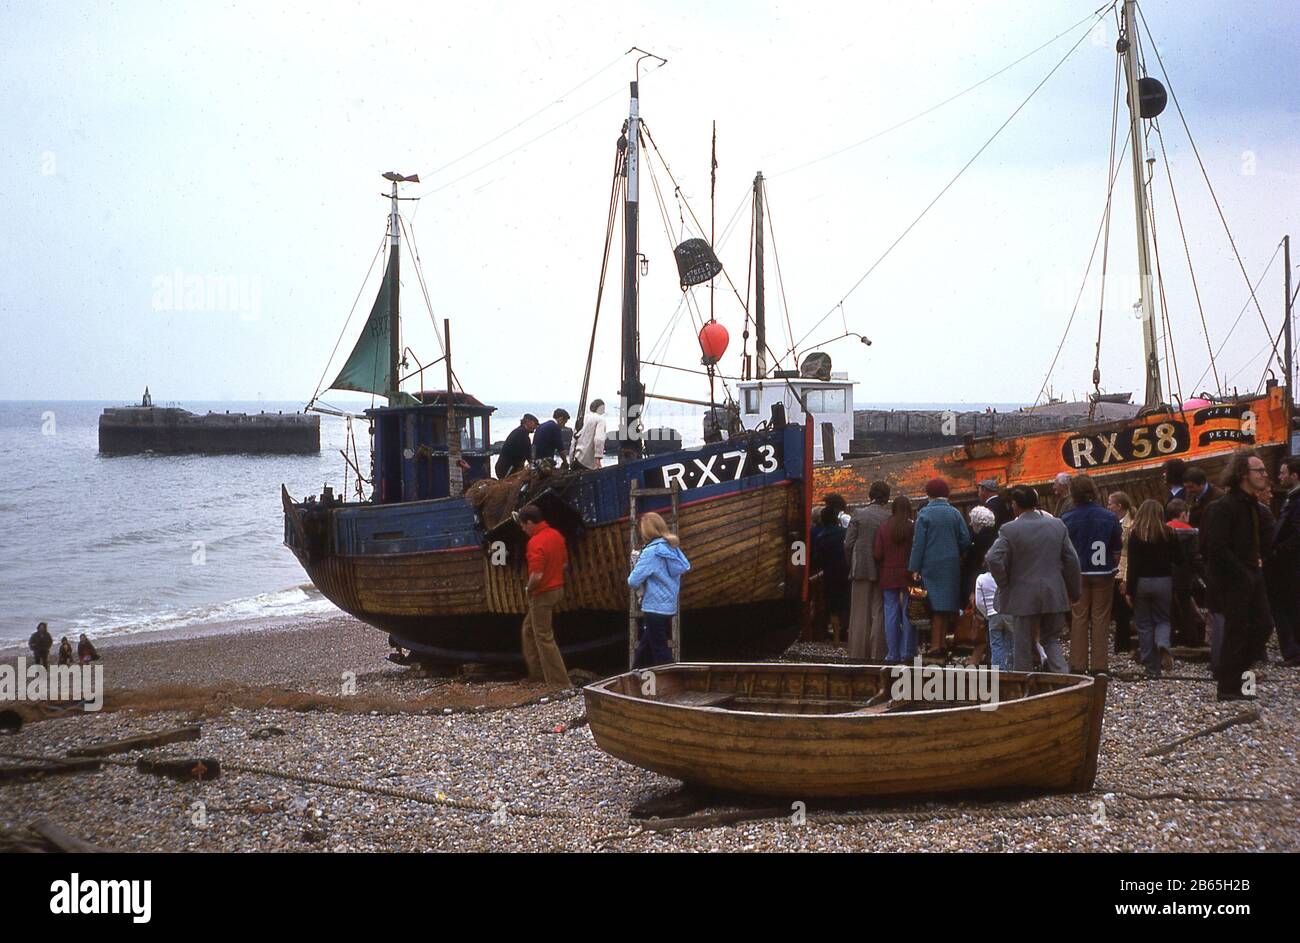 Anni '1970, storia, gente che aspetta a bordo di vecchie barche da pesca in legno sulla spiaggia di stoney a Rock-a-Nore a Hastings, East Sussex, Inghilterra, Regno Unito, la RX73 dipinta di blu e la RX58 dipinta di arancione. Uno dei porti di pesca più antichi della Gran Bretagna, la città di mare ospita la famosa flotta di pesca Hastings, la più antica e grande flotta di pescatori lanciata sulla spiaggia della Gran Bretagna. Foto Stock